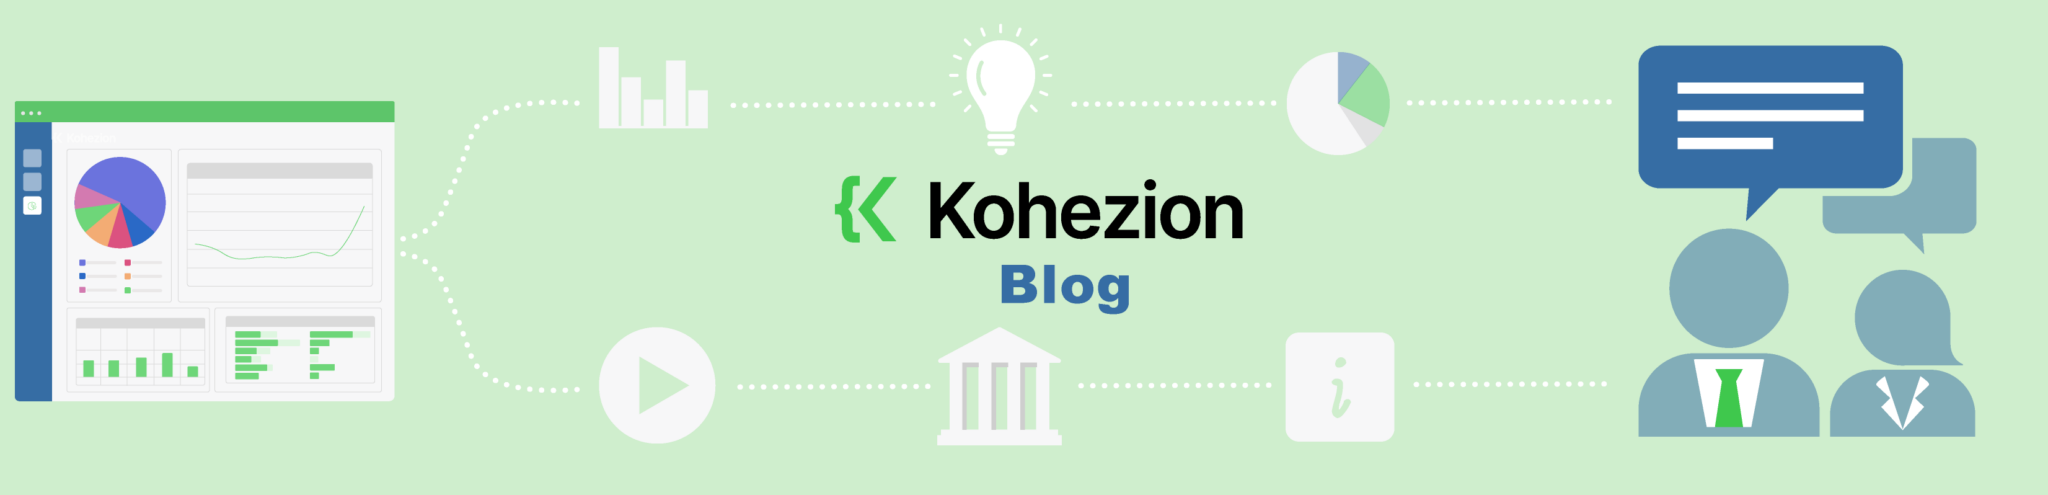 kohezion-general-banner